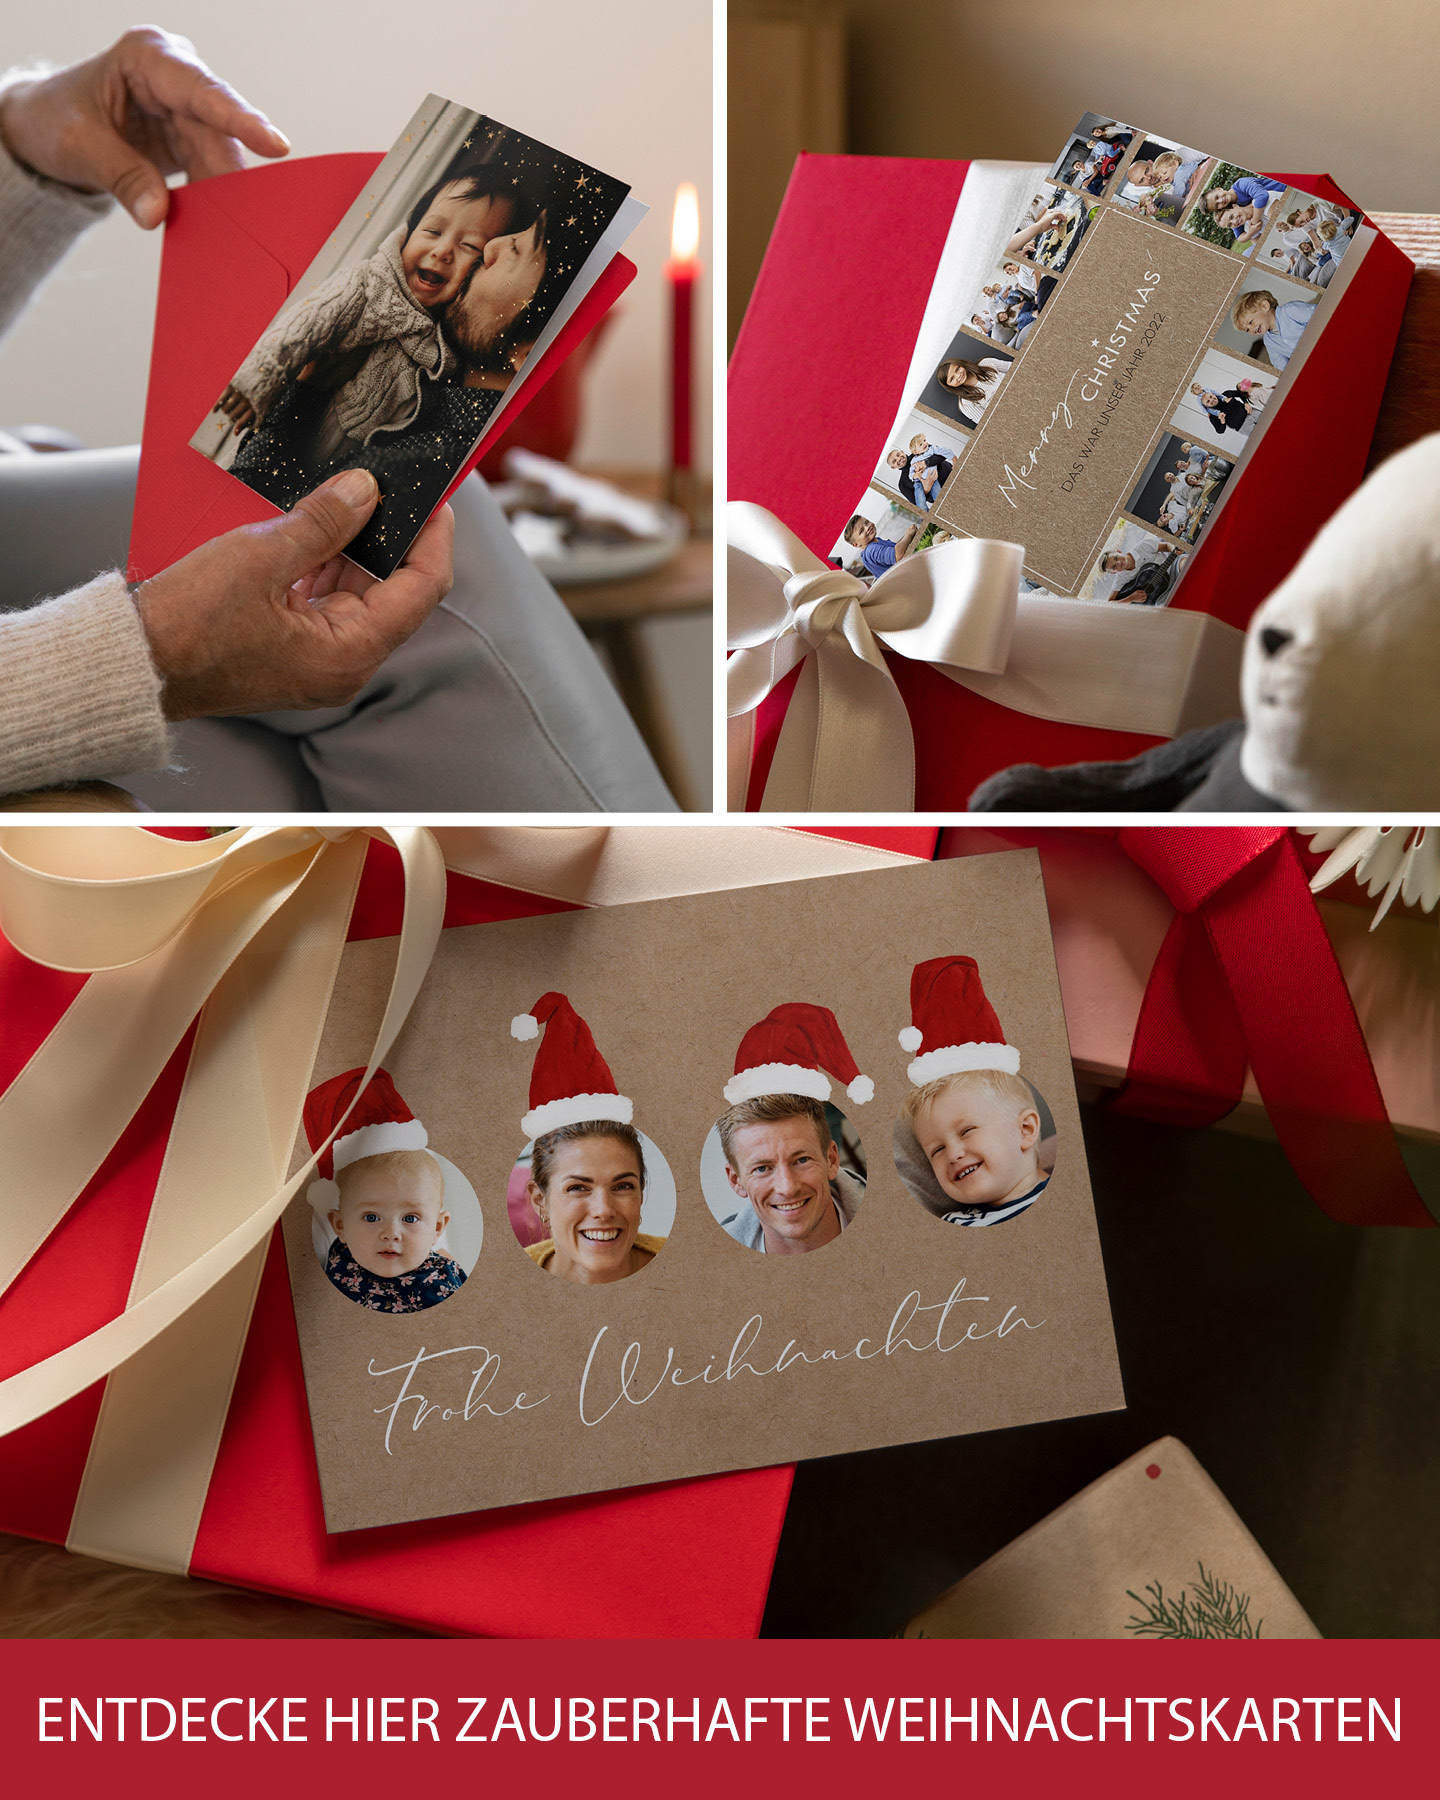 3 unterschiedliche Weihnachtskarten mit persönlichem Foto und Weihnachtsgedicht